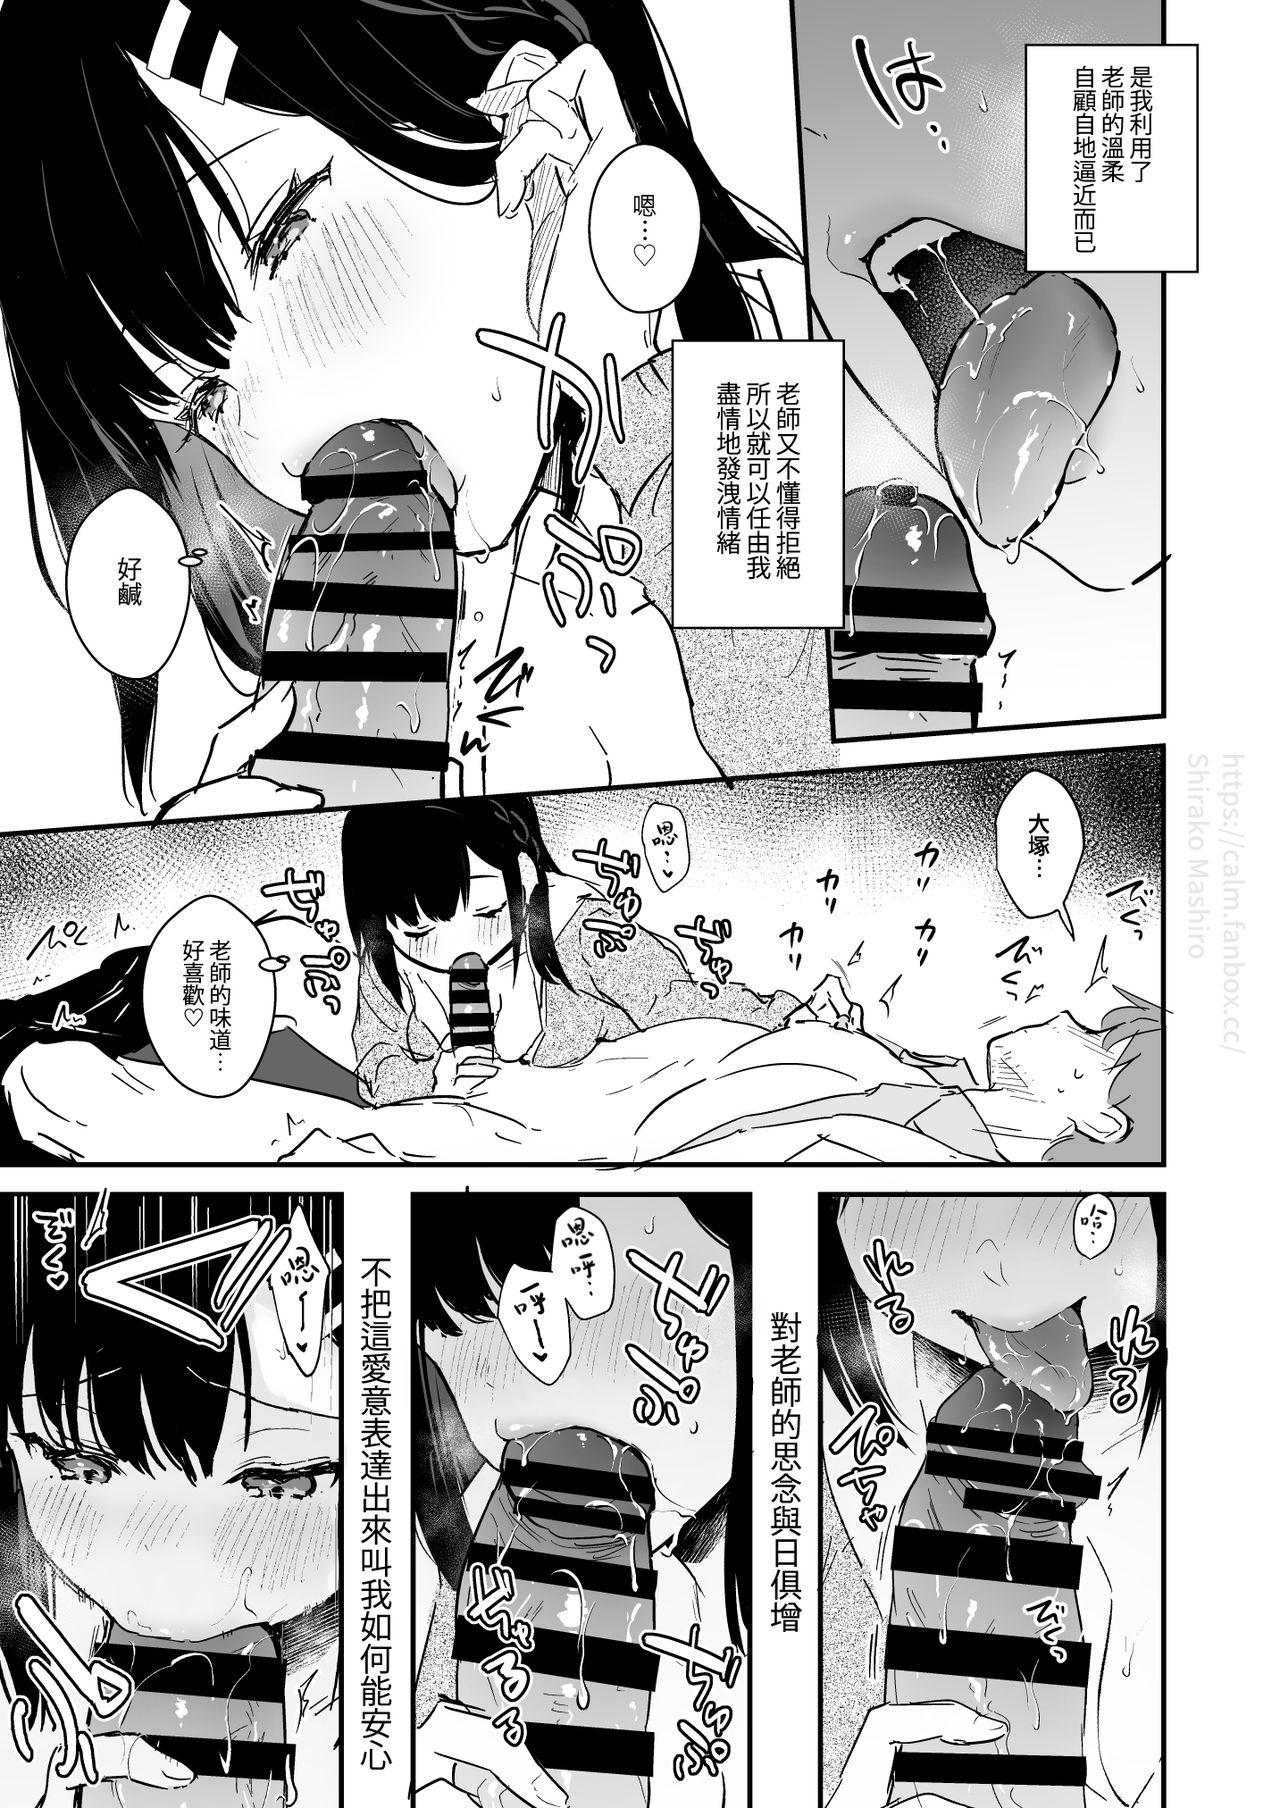 JK Miyako no Valentine Manga 7